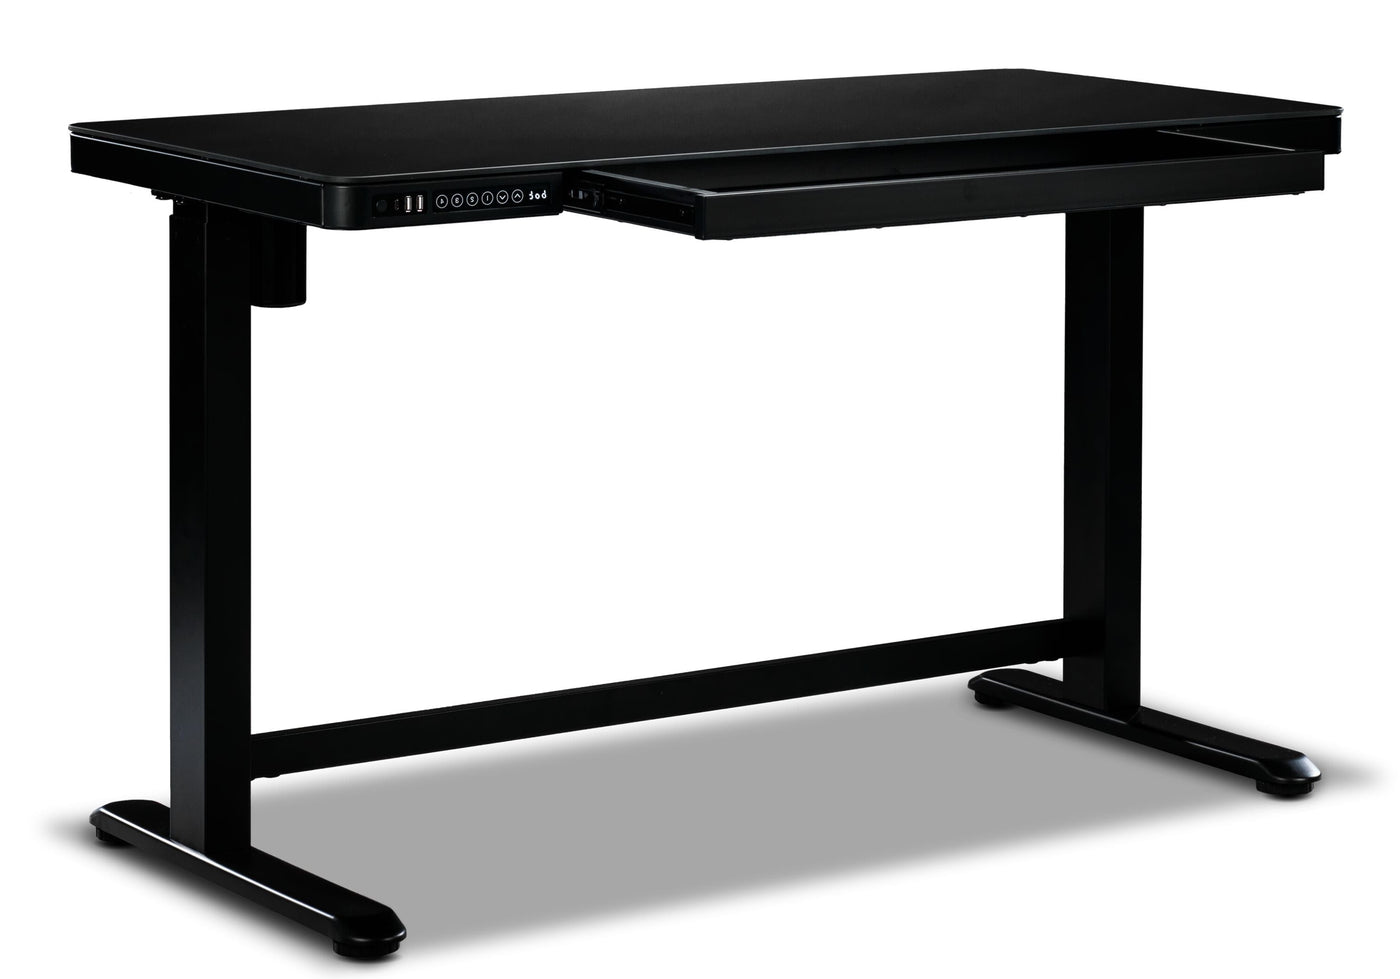 Maddox Adjustable Height Desk - Black